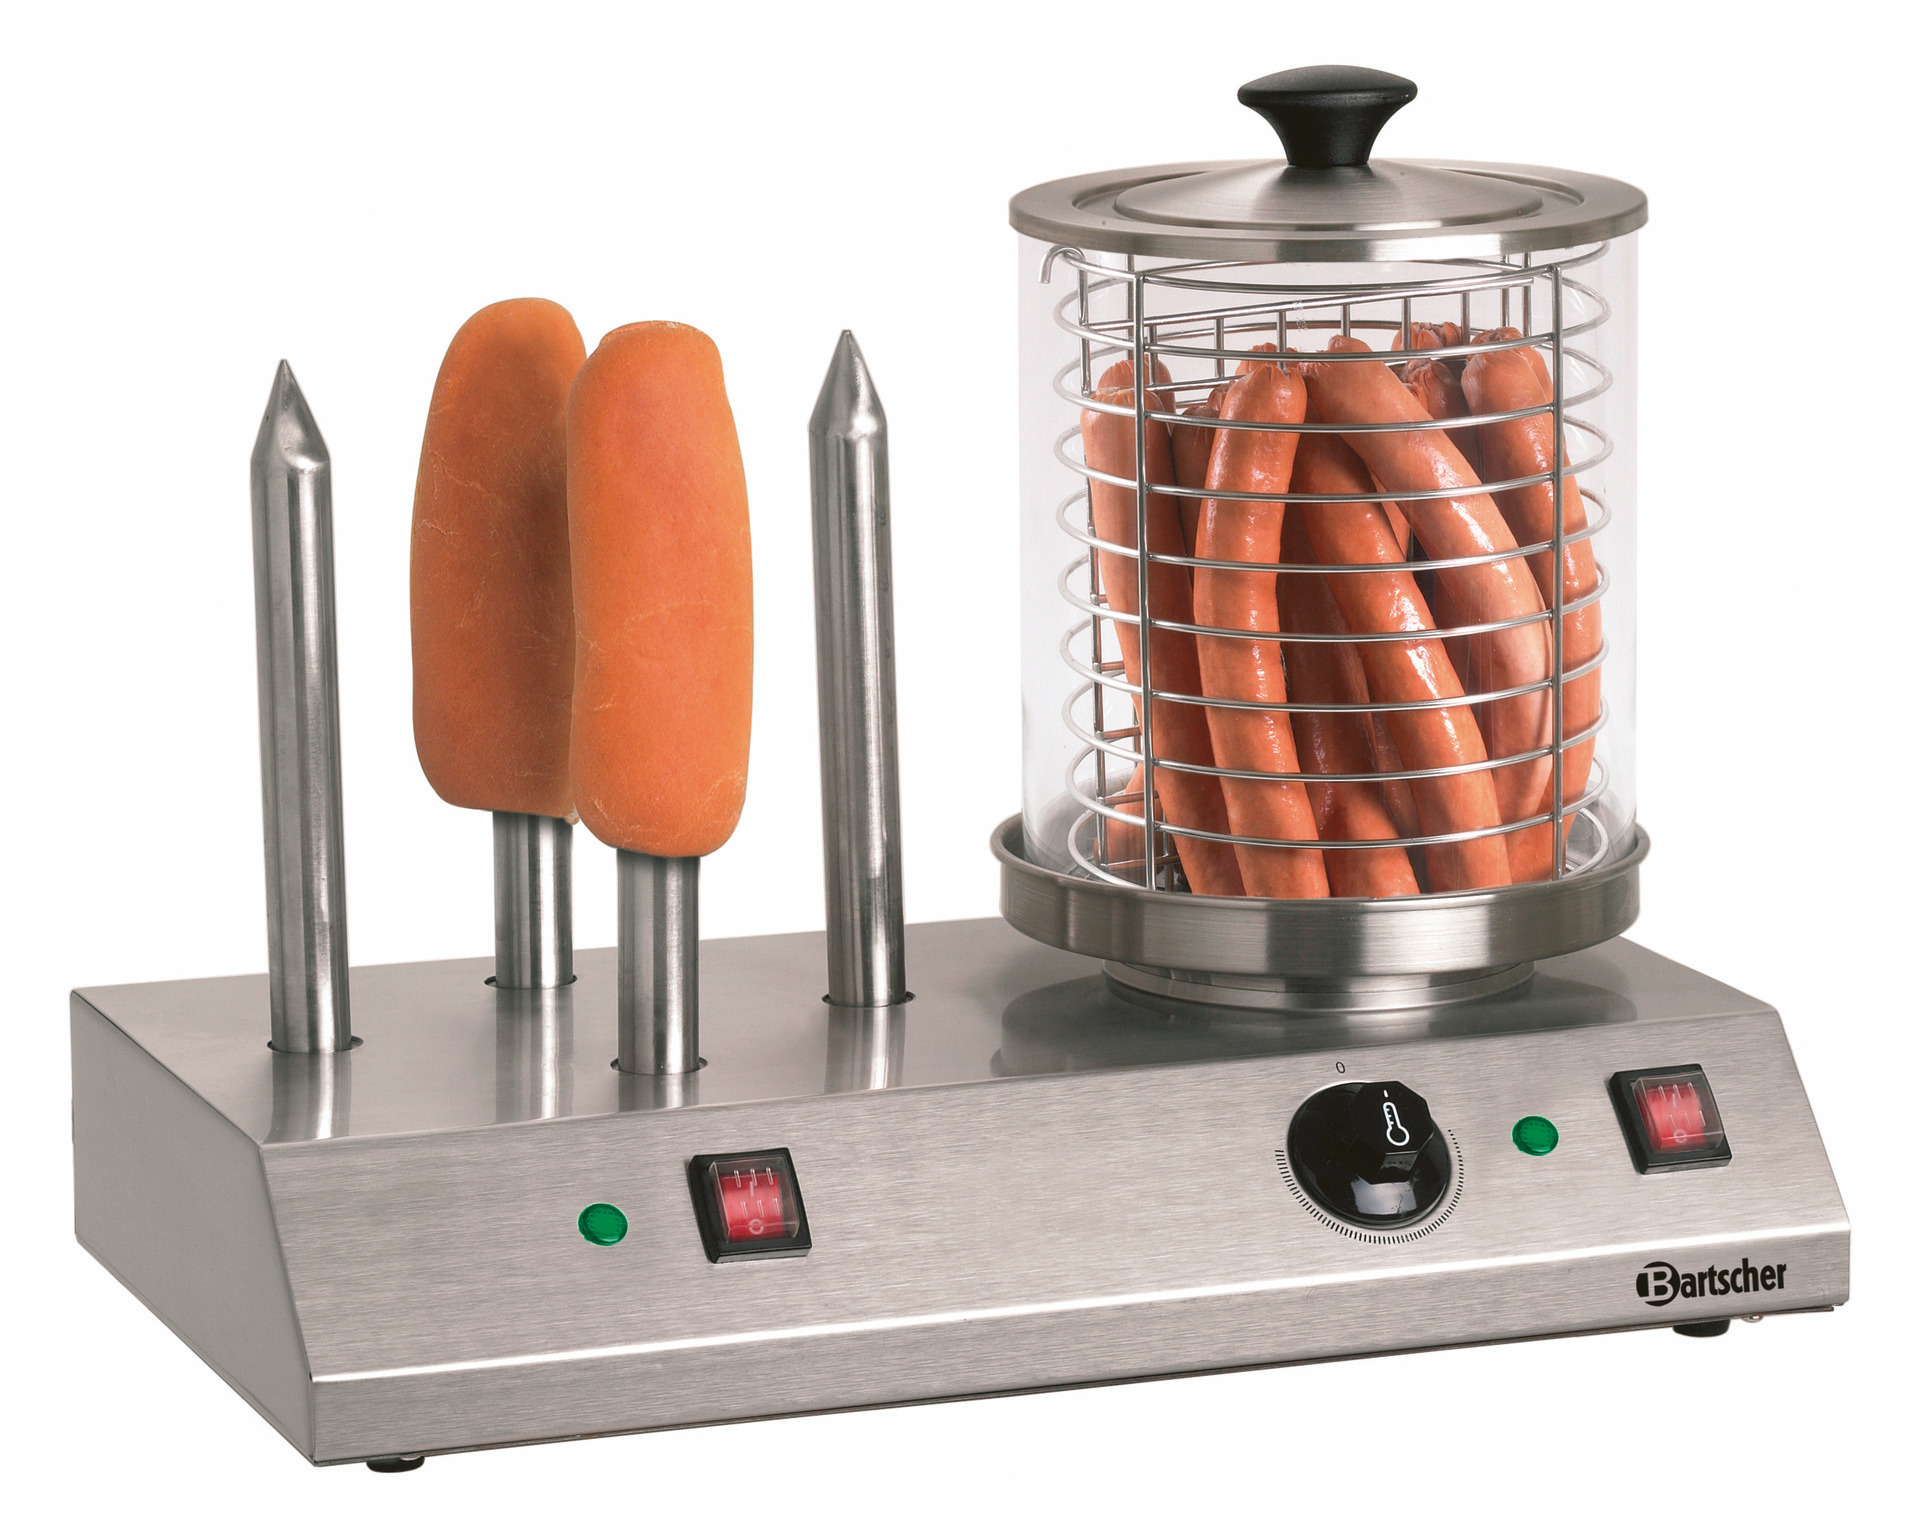 Hot-Dog-Gerät mit 4 Toaststangen / 500 x 285 x 390 mm / 230 V / 0,96 kW